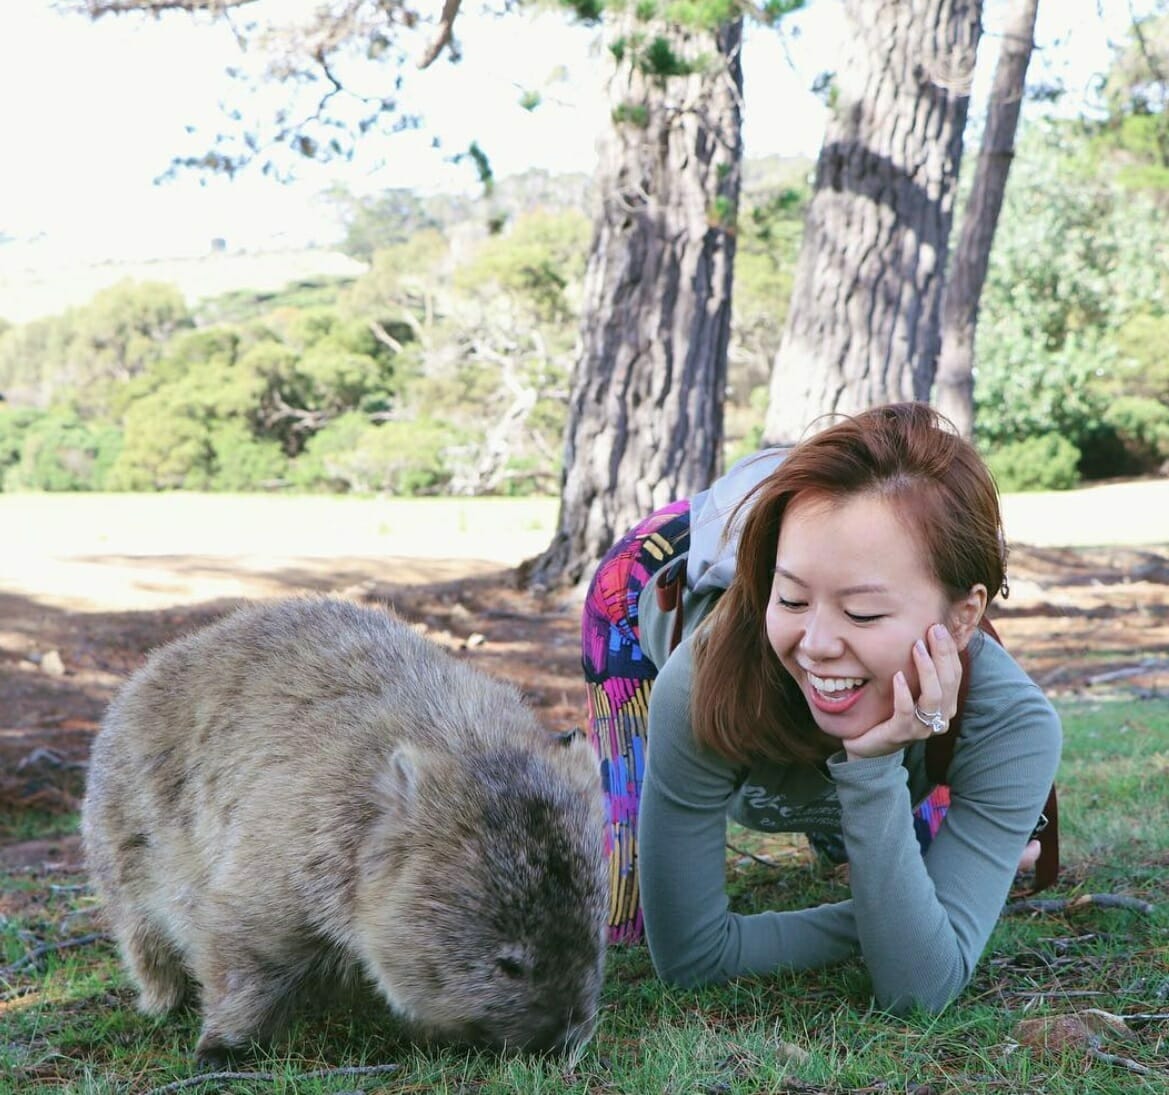 wombat selfie